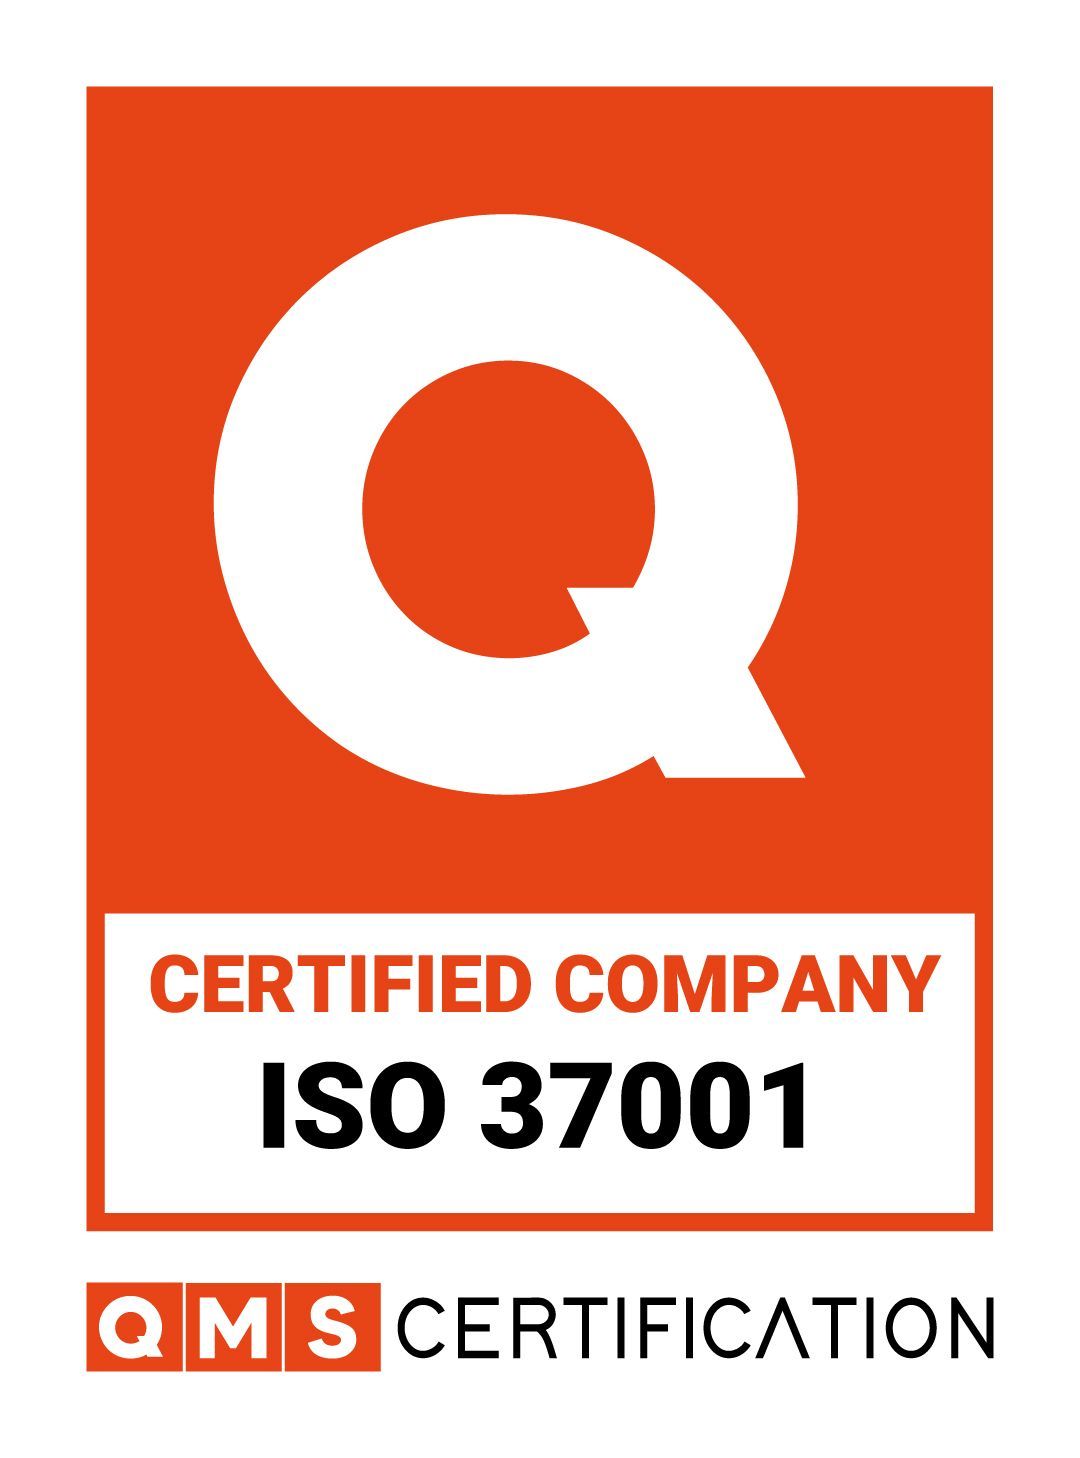 um logotipo para uma empresa certificada iso 37001